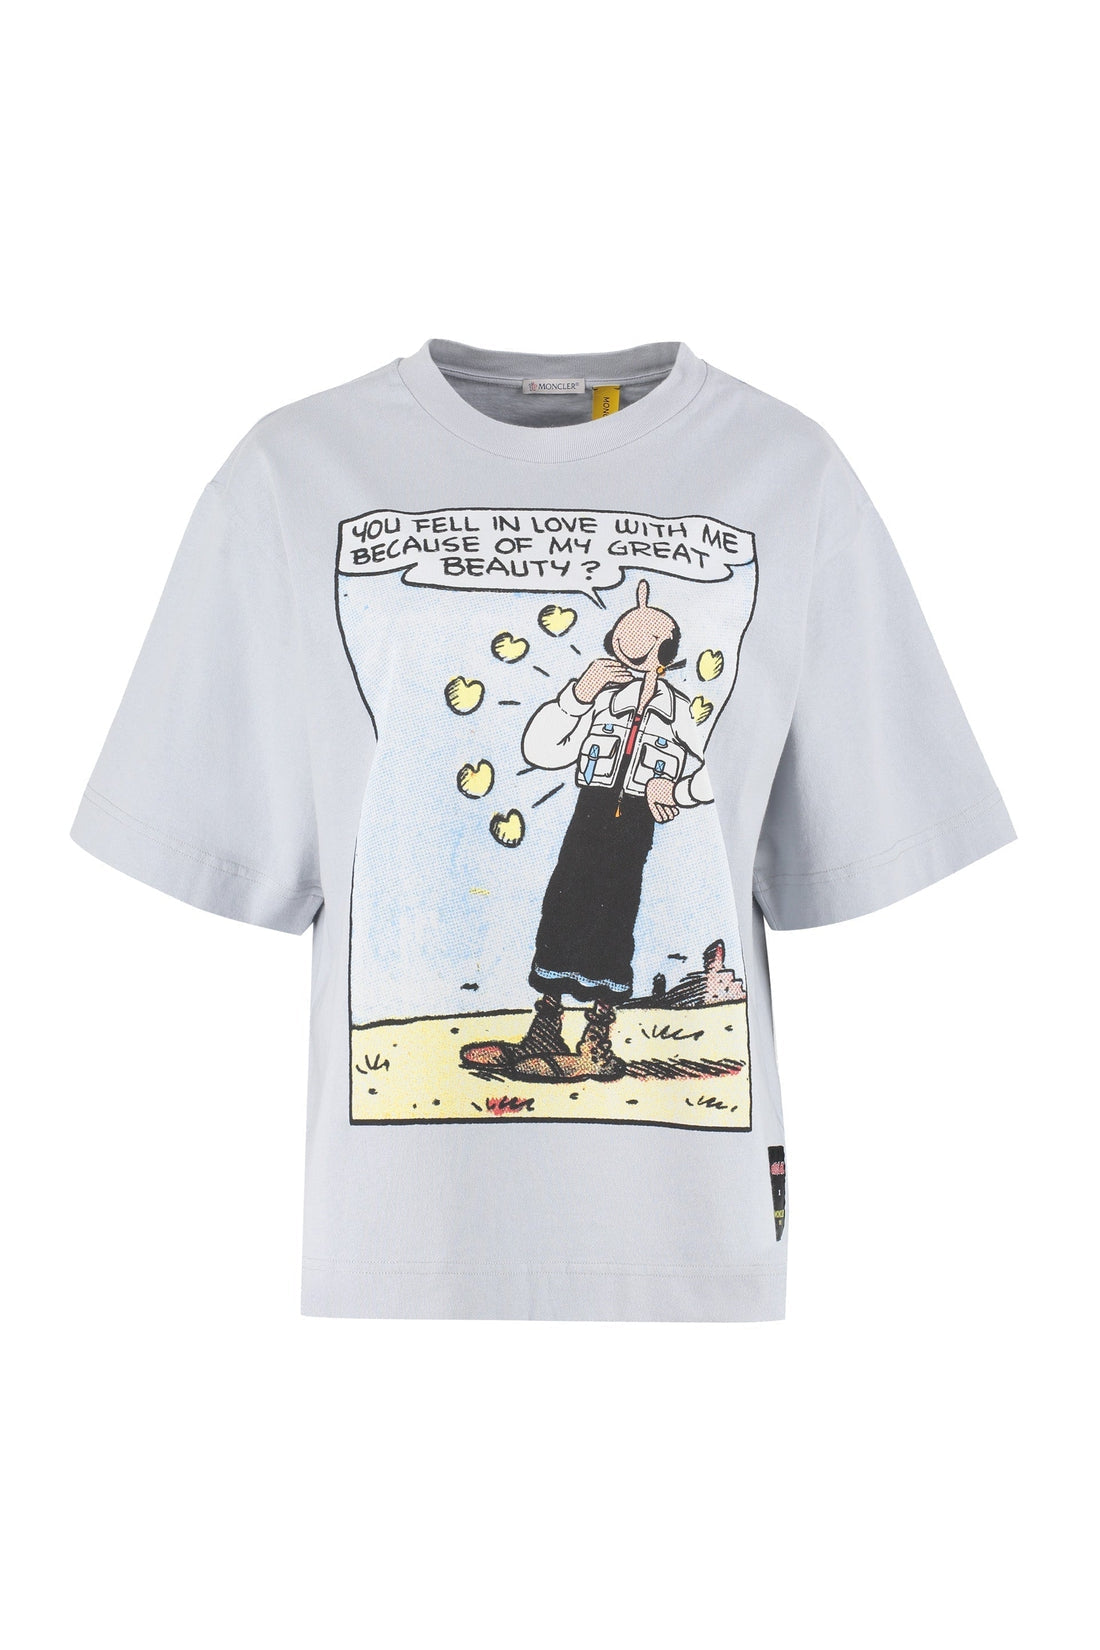 Moncler Genius-OUTLET-SALE-2 Moncler 1952 - Olivia Oyl cotton crew-neck T-shirt-ARCHIVIST